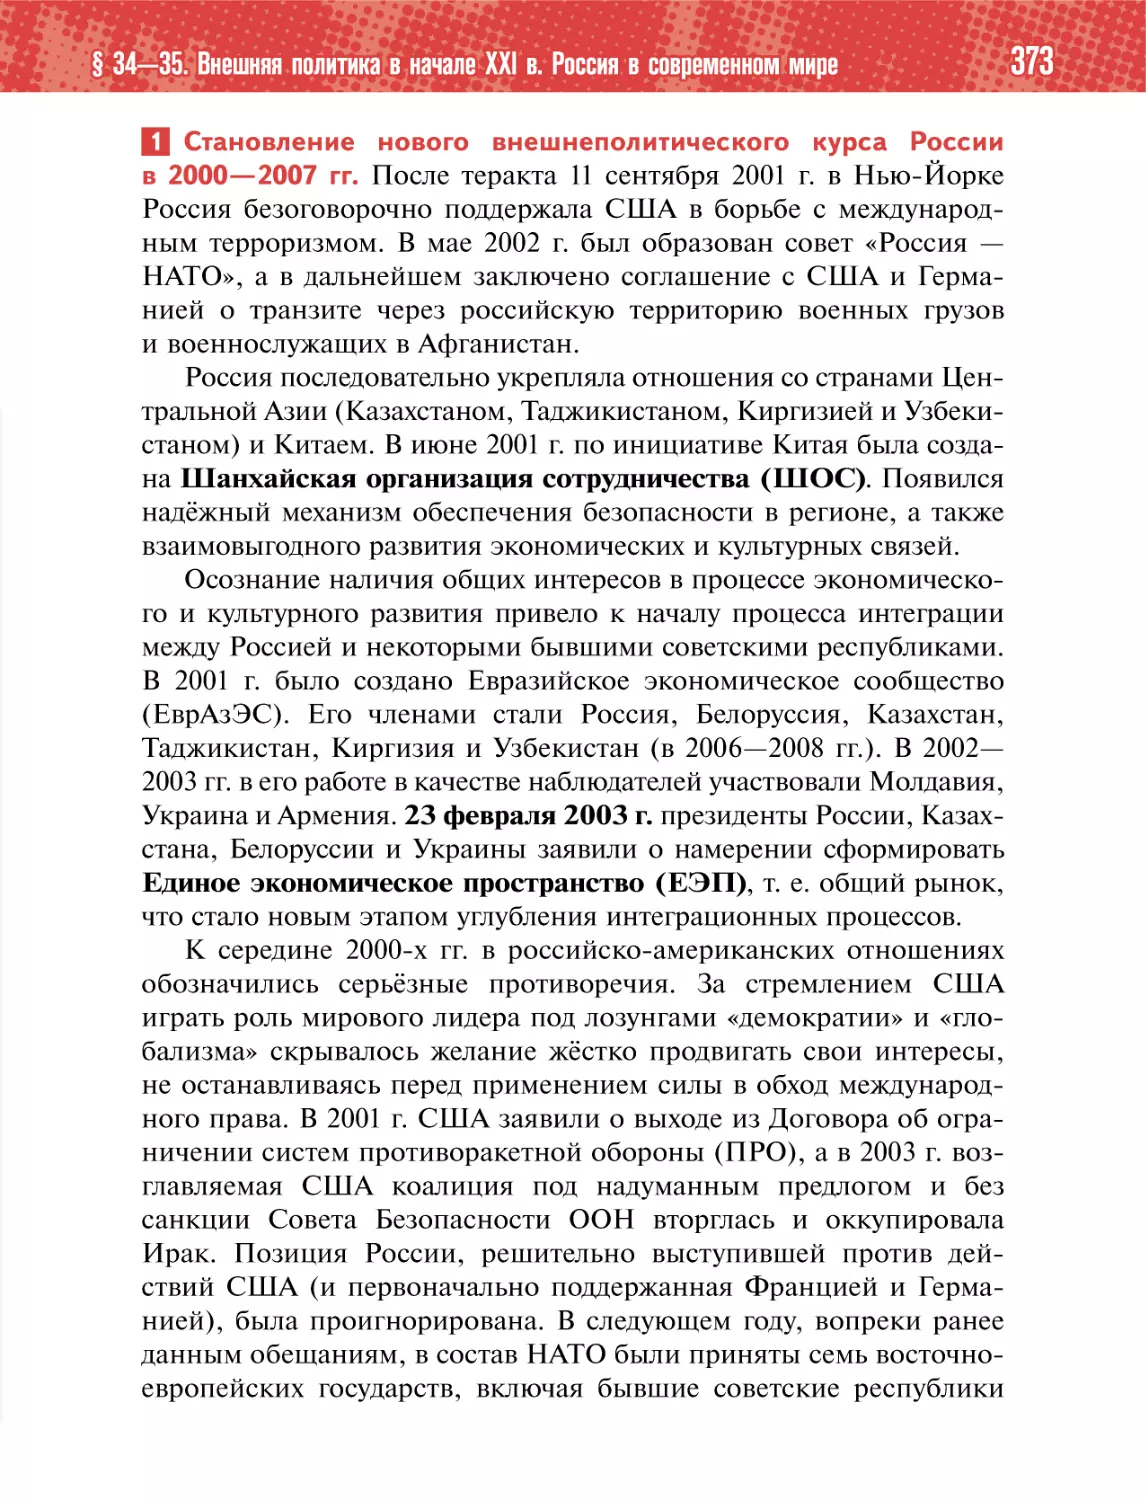 1 Становление нового внешнеполитического курса Россиив 2000—2007 гг.